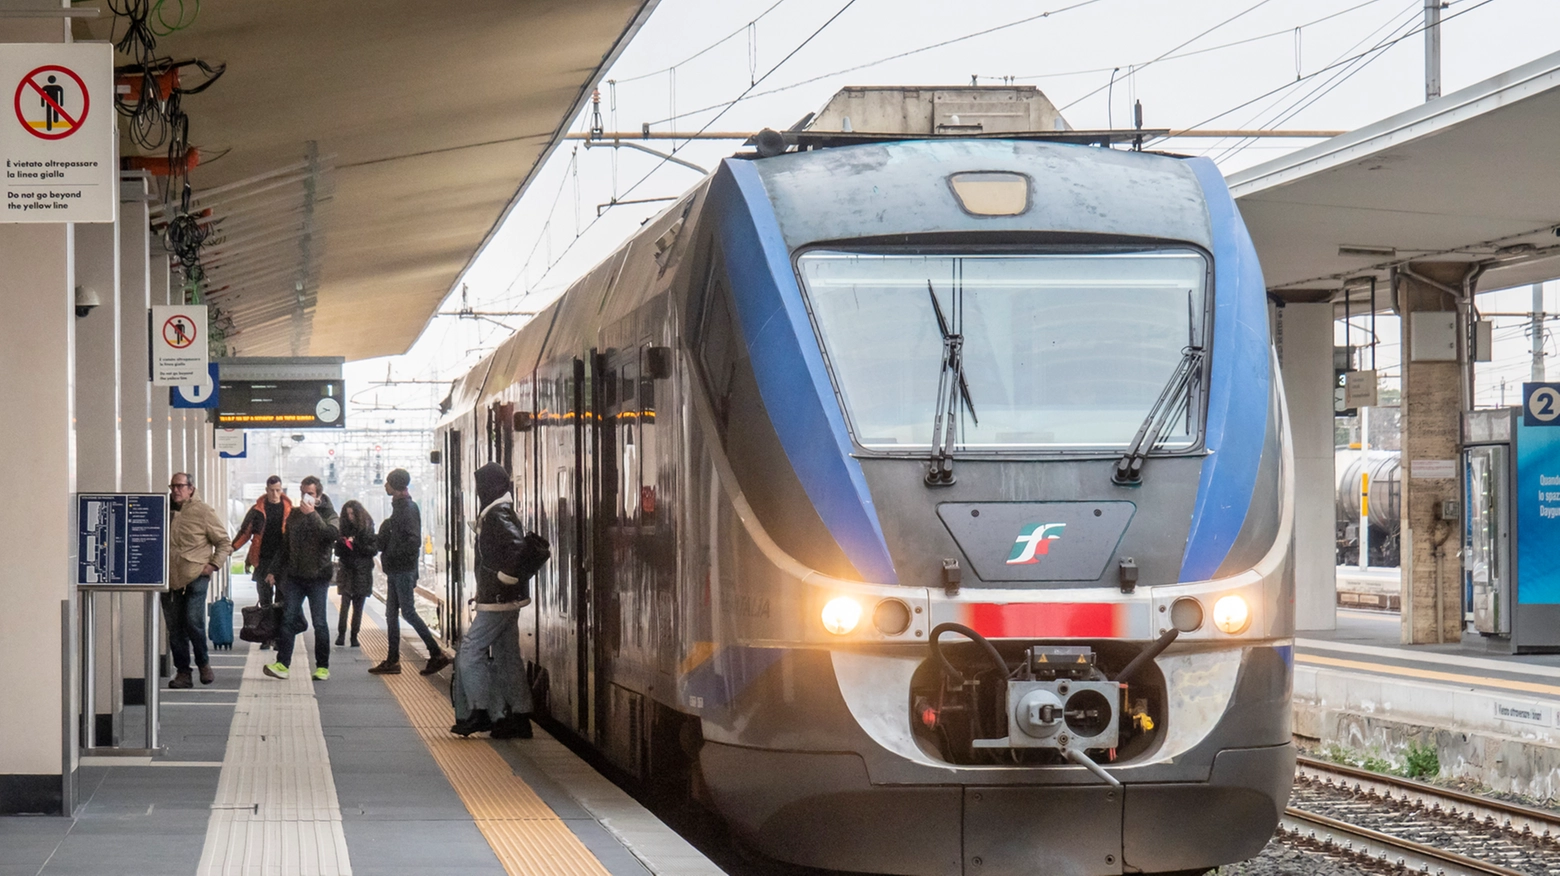 Problemi sull’alta velocità per un guasto a un treno a Reggio Emilia e sulla linea convenzionale all’altezza di Castelfranco Emilia